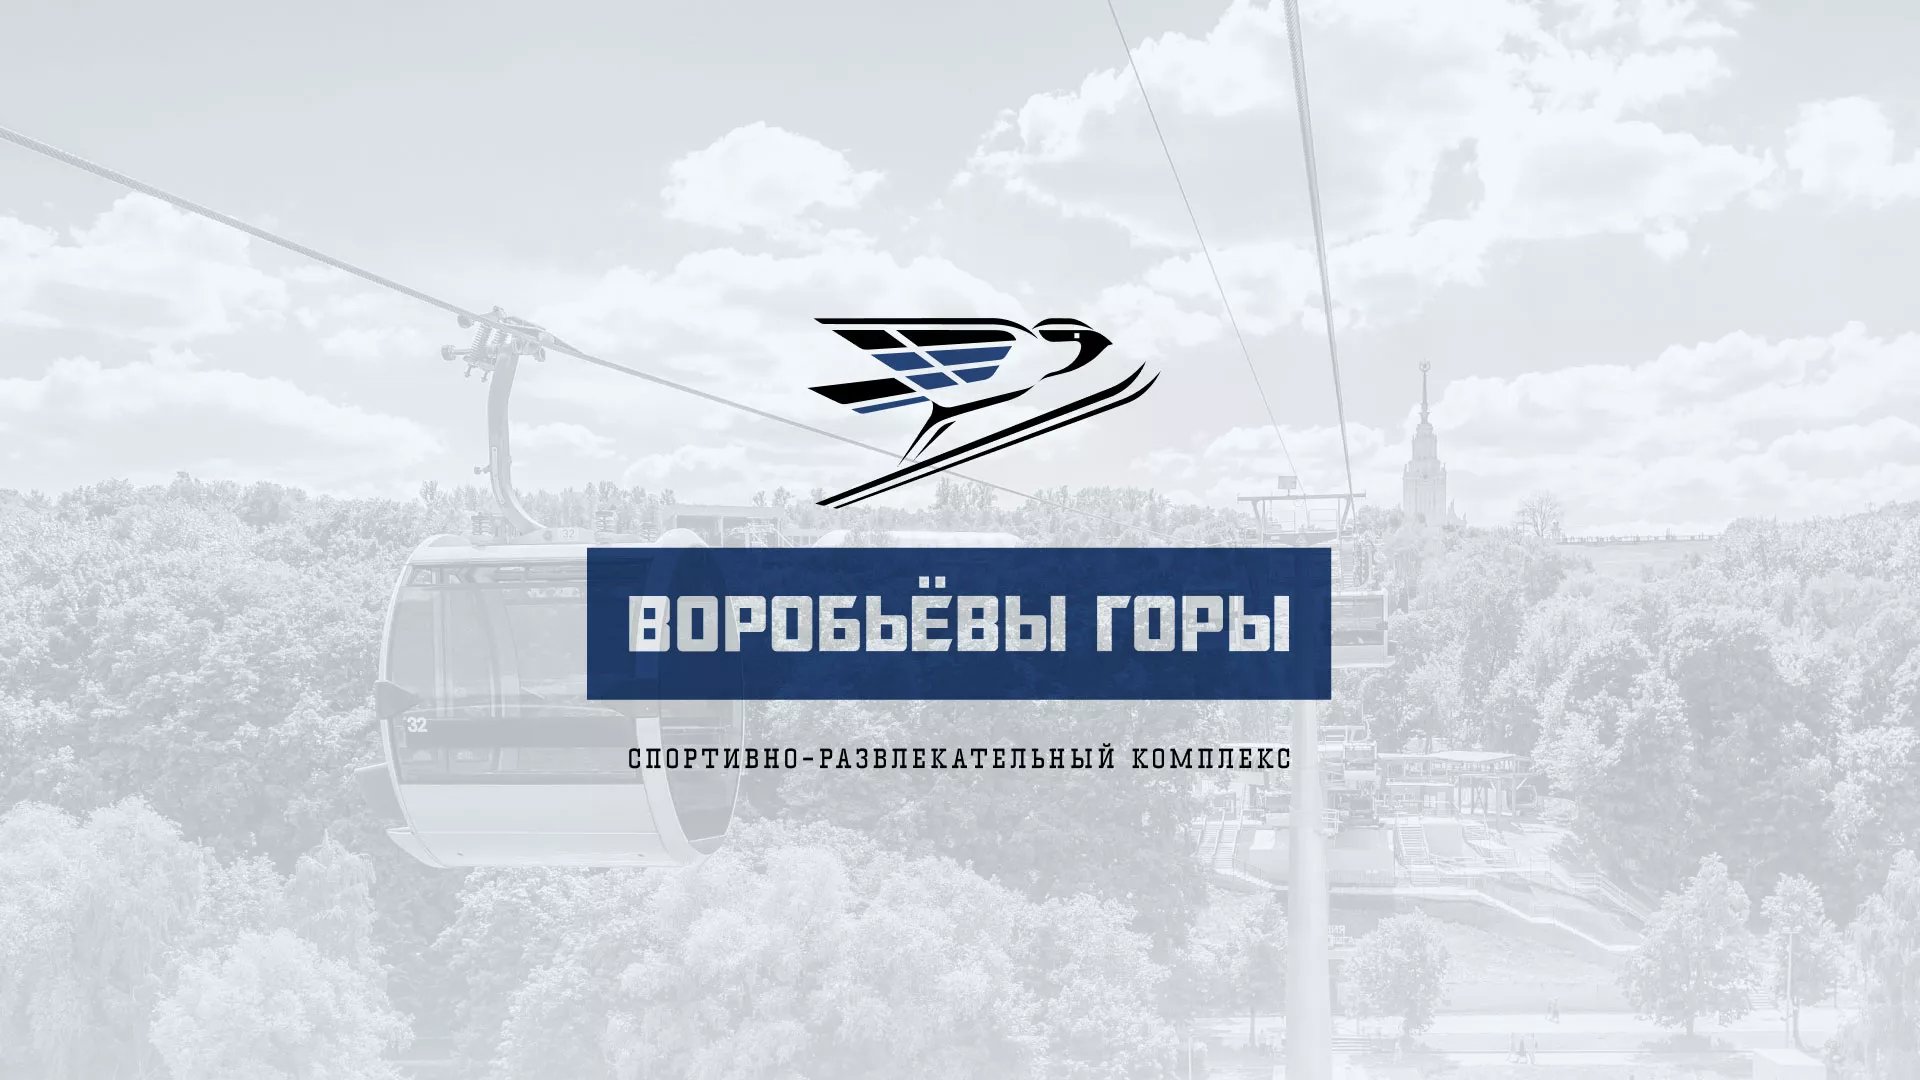 Разработка сайта в Волхове для спортивно-развлекательного комплекса «Воробьёвы горы»